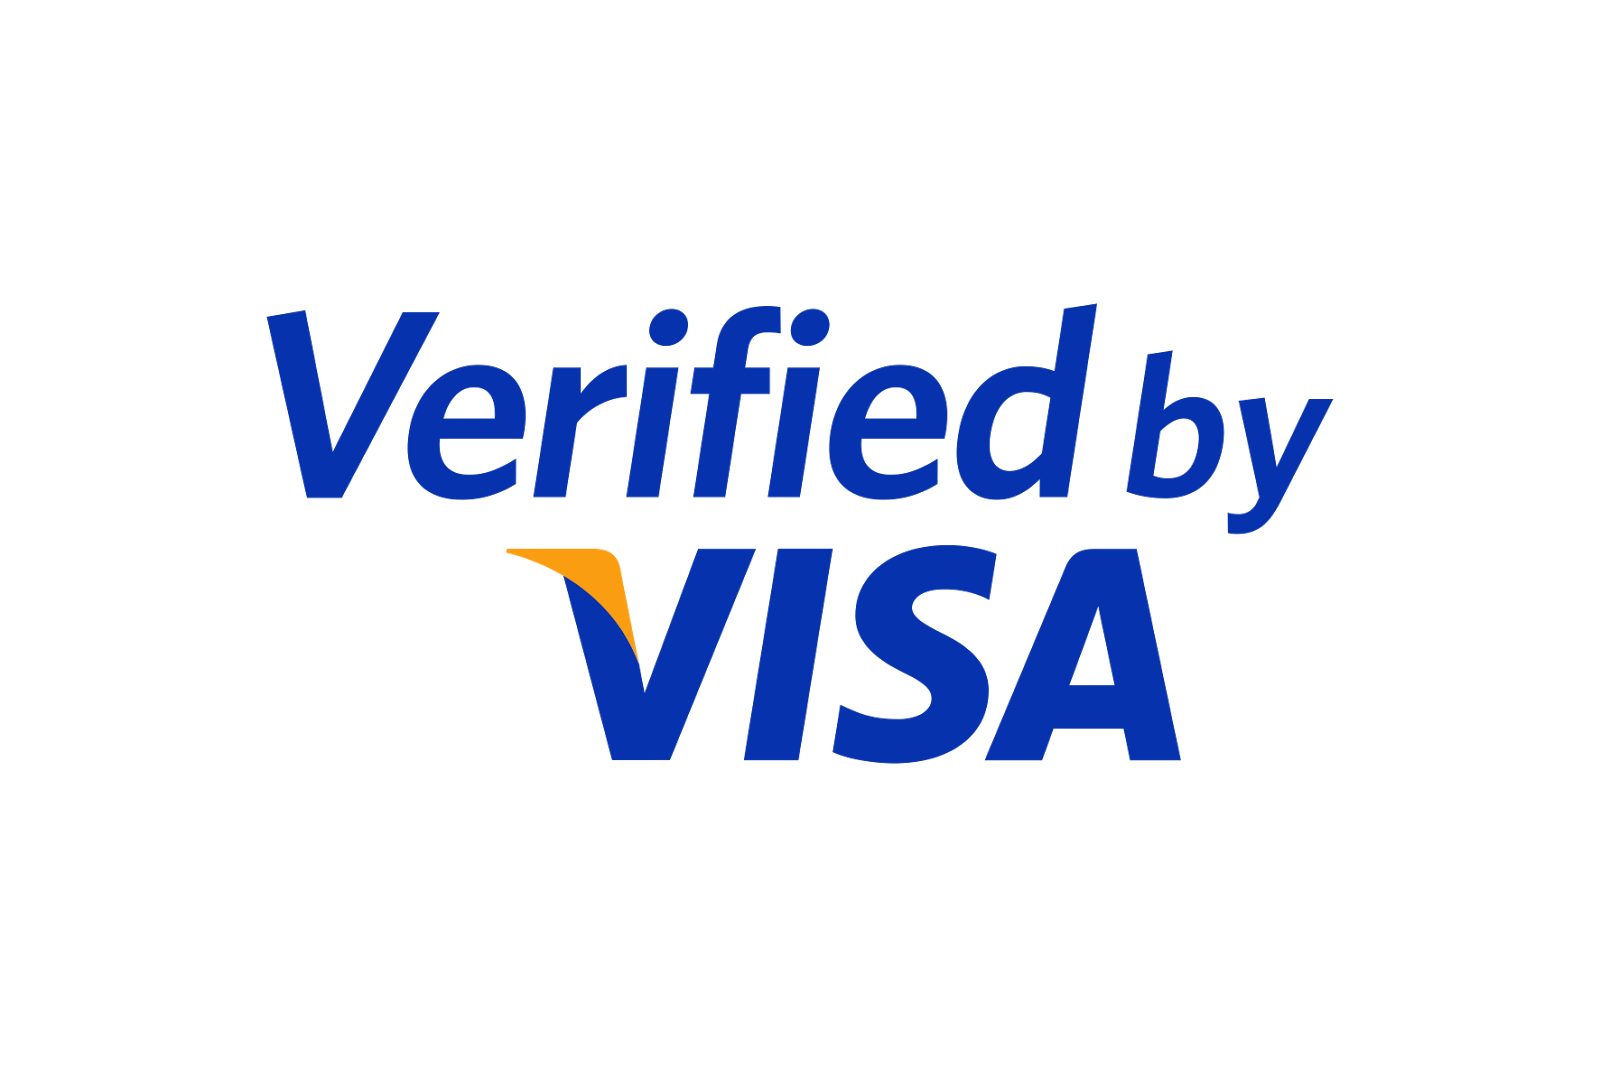 ความปลอดภัยของการใช้รหัสบัตรเครดิต Verified by VISA (VbV)